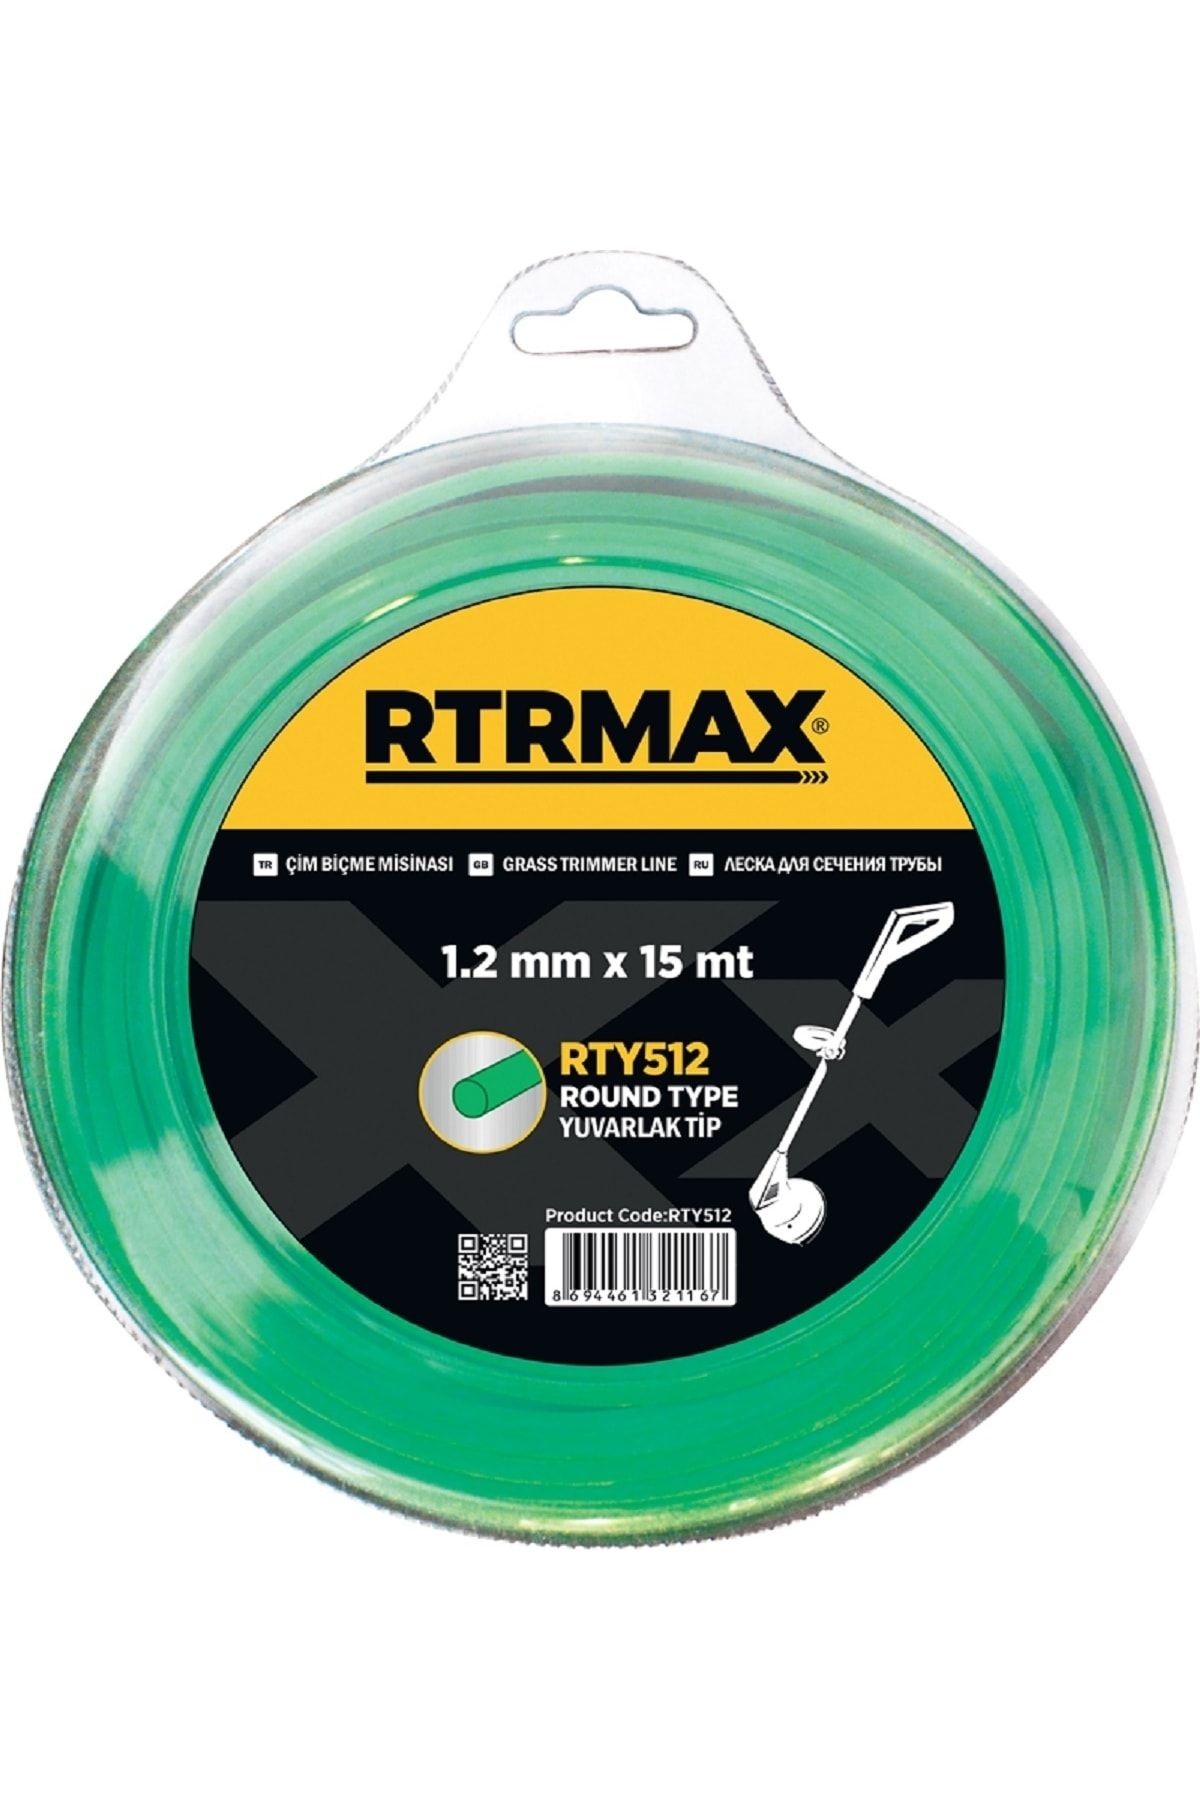 Rtrmax Rty512 Tırpan Misinası Yeşil 1,2mm*15mt